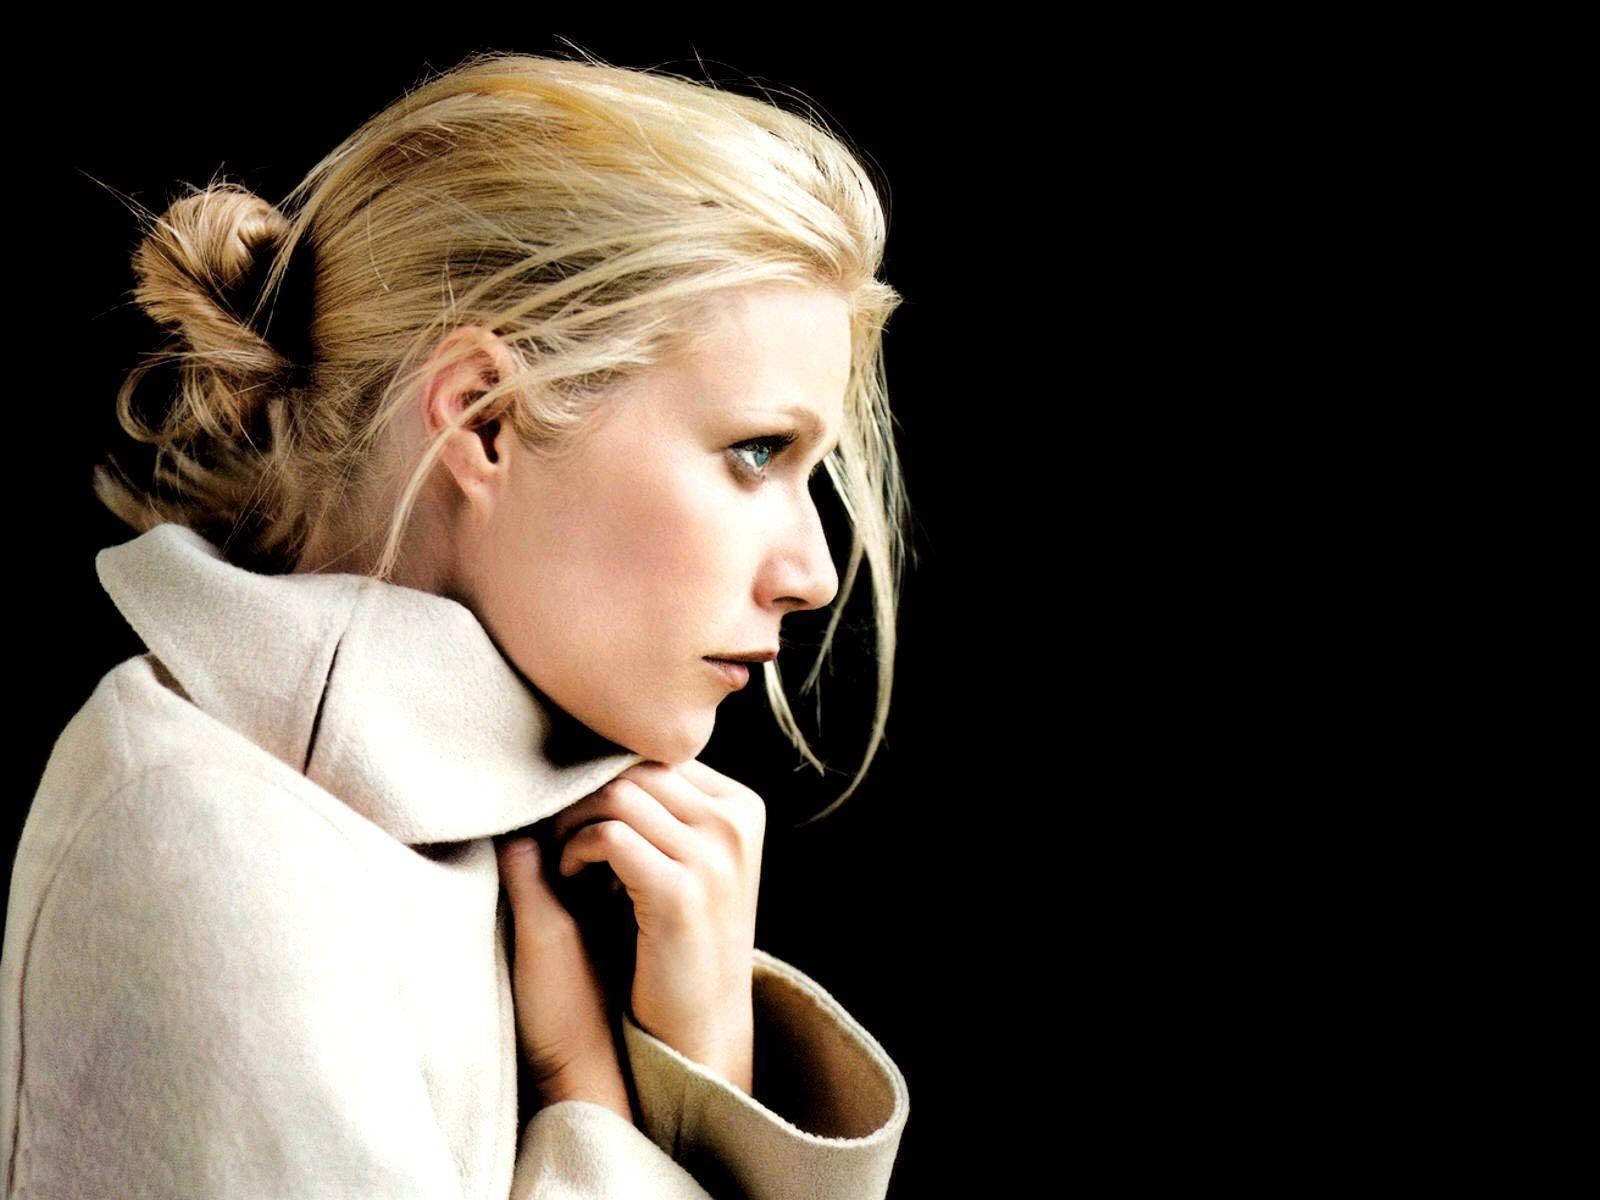 Gwynethpaltrow Profilbild James White Photoshoot Wallpaper